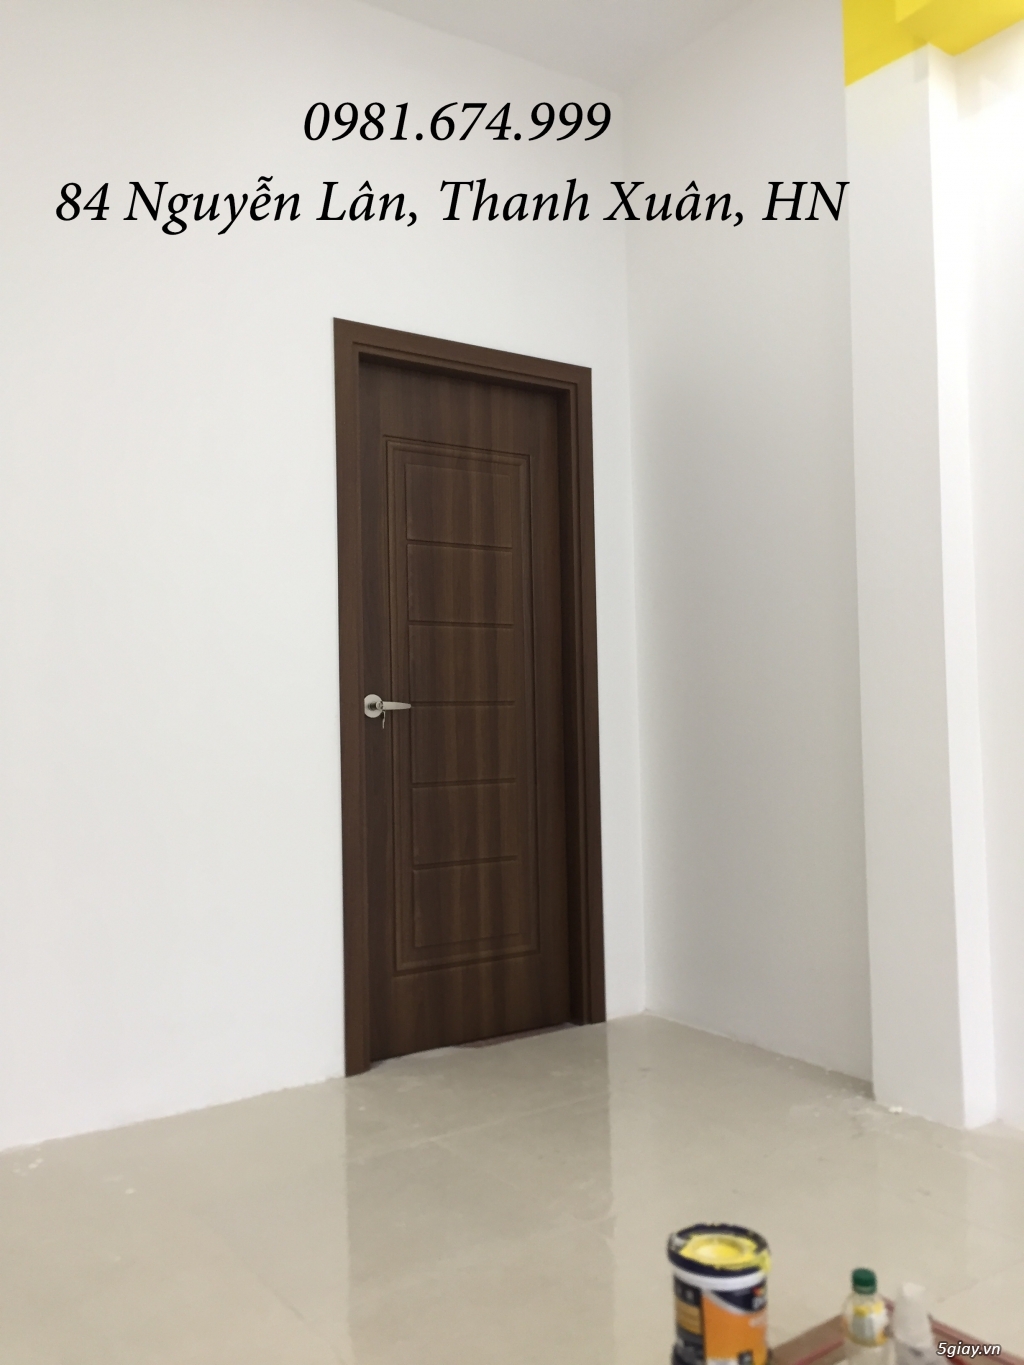 Báo giá cửa nhựa ABS Hàn Quốc YoungLim Door - 84 Nguyễn Lân, TX, HN - 18